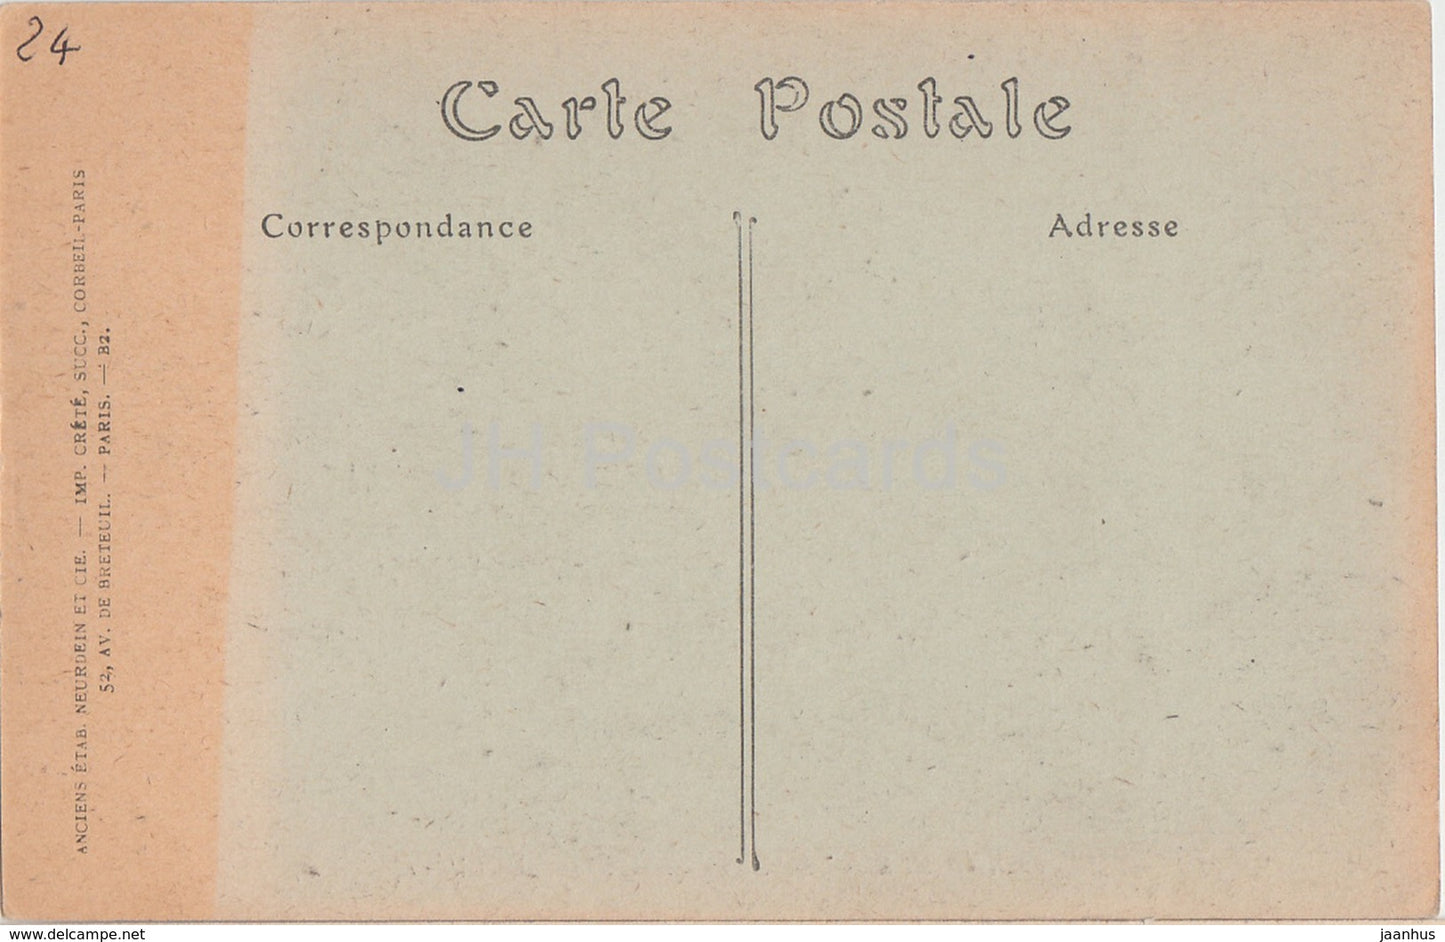 Perigueux - Basilique Saint Front - Le Choeur - Kathedrale - 140 - alte Postkarte - Frankreich - unbenutzt